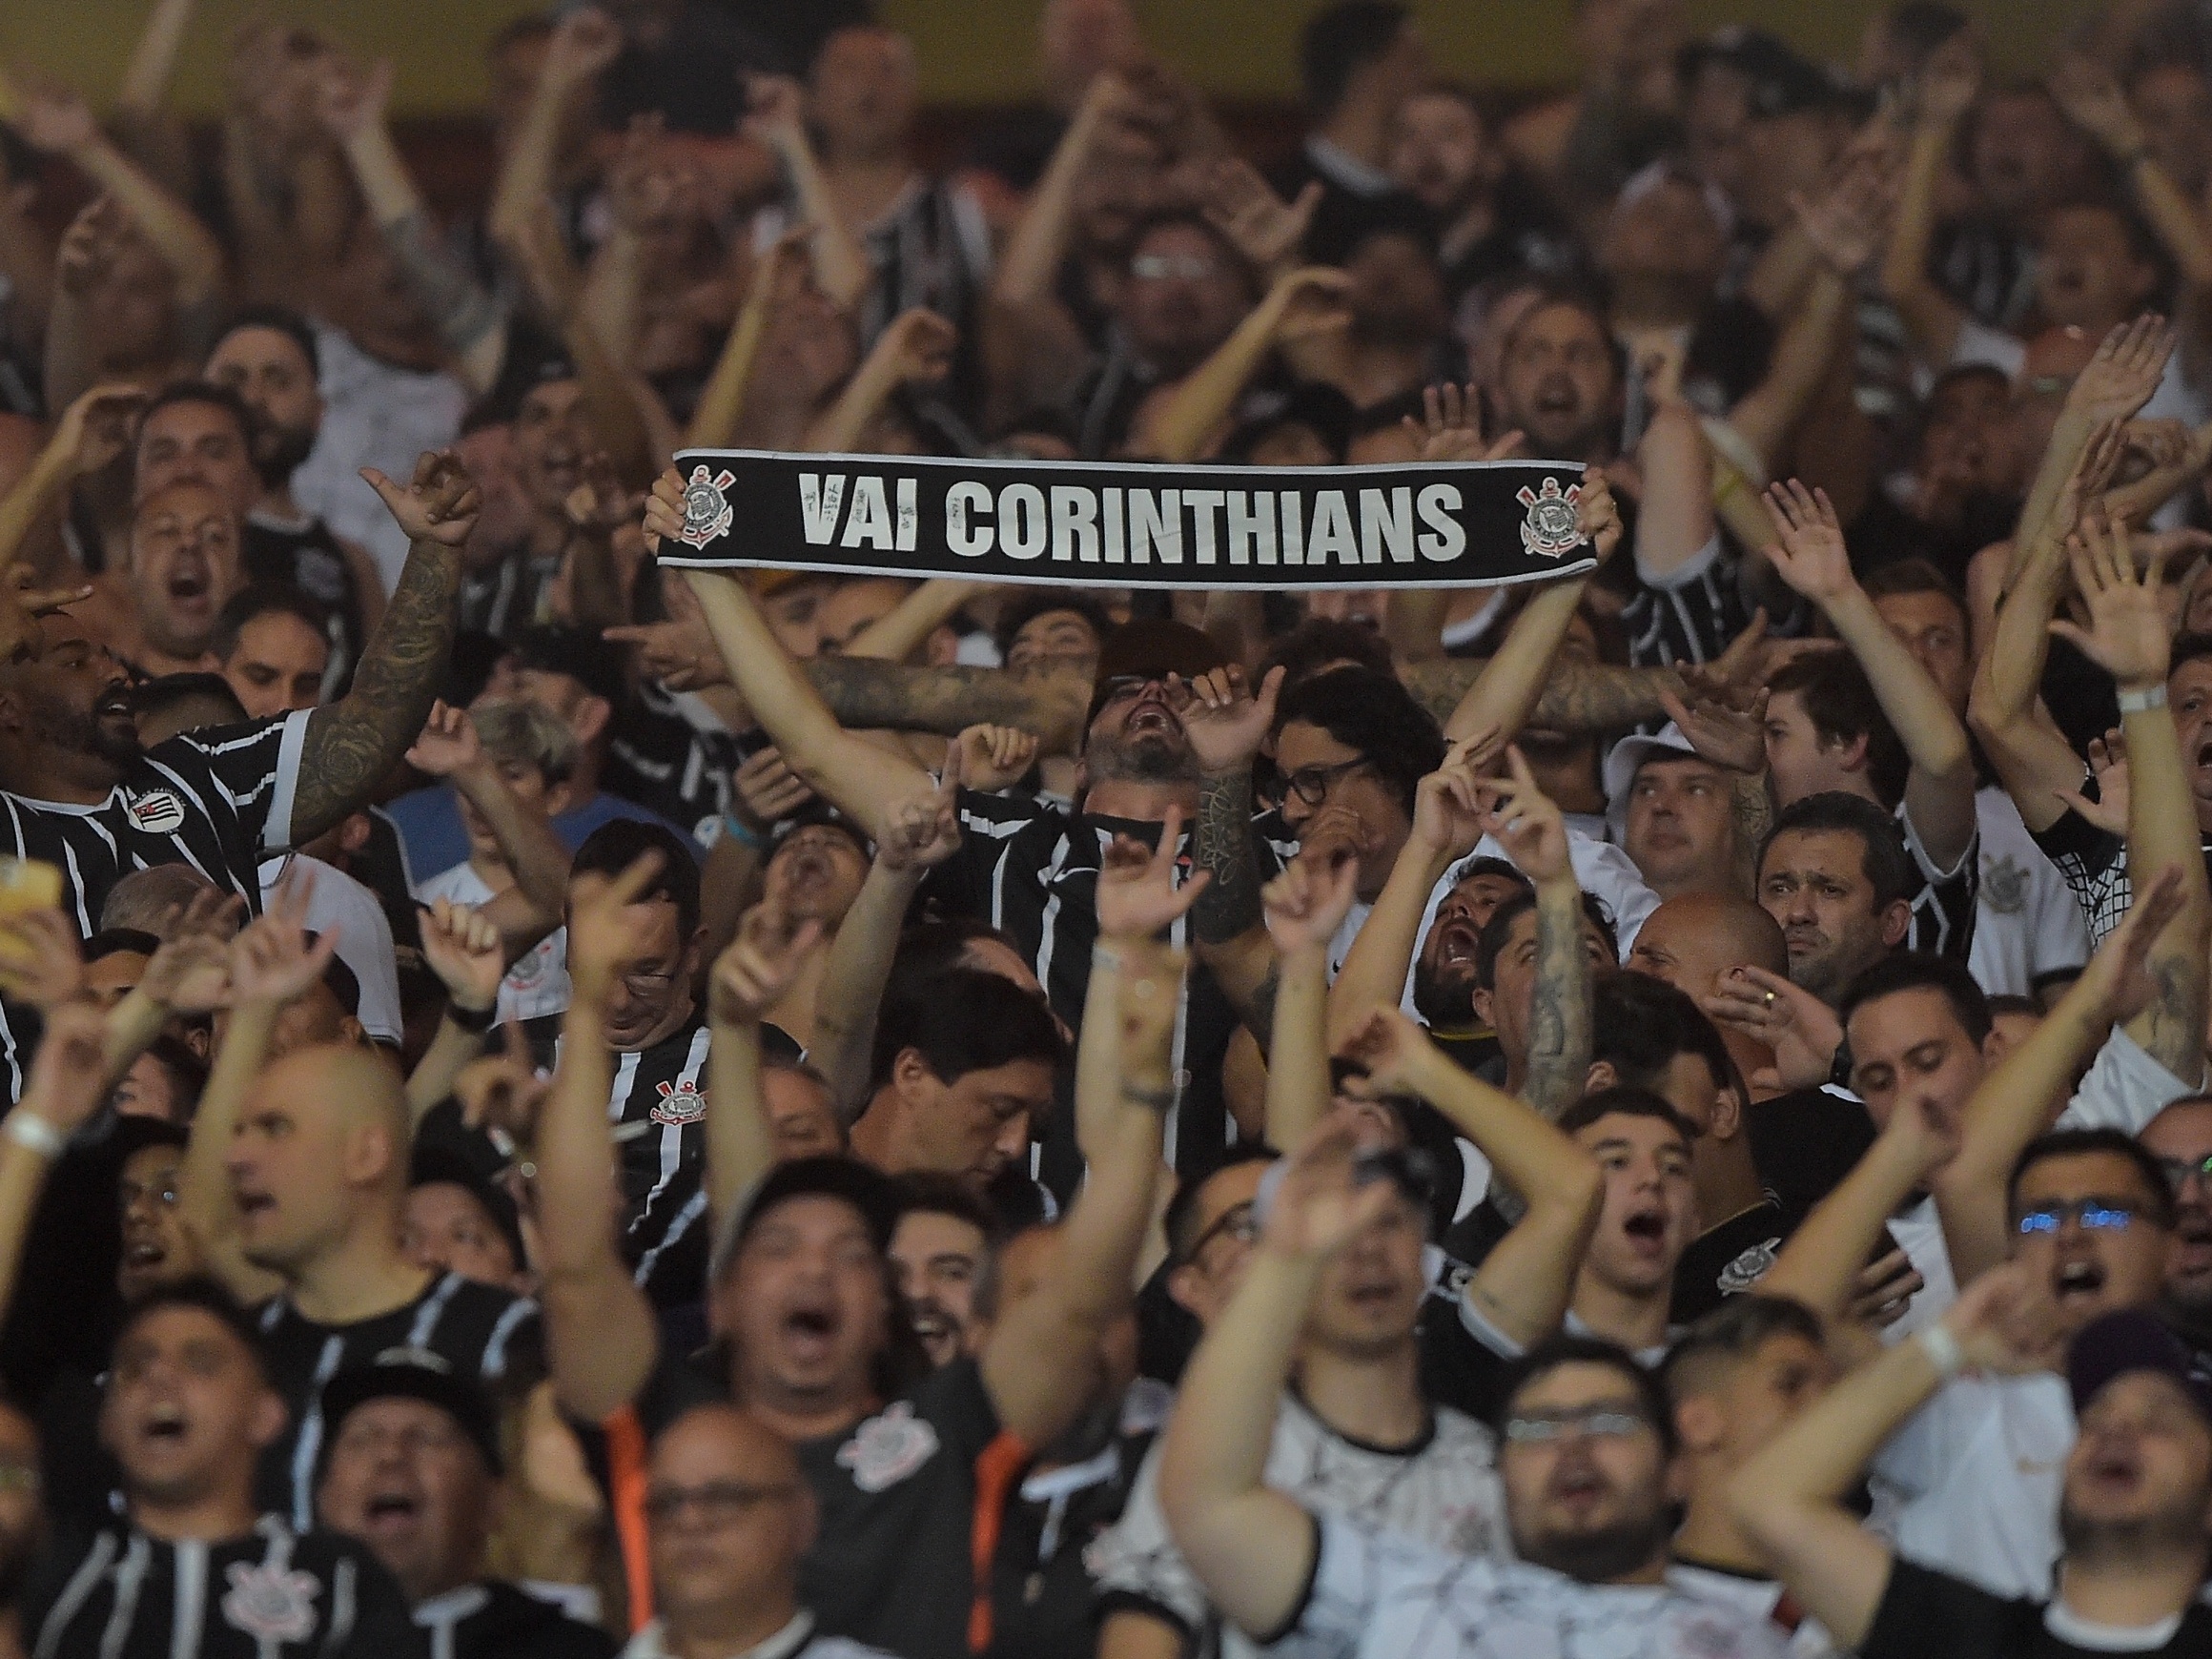 Torcedores do Flamengo fazem filas na Gávea em busca de ingressos gratuitos  para jogo contra o Corinthians pela Libertadores - Diário do Rio de Janeiro